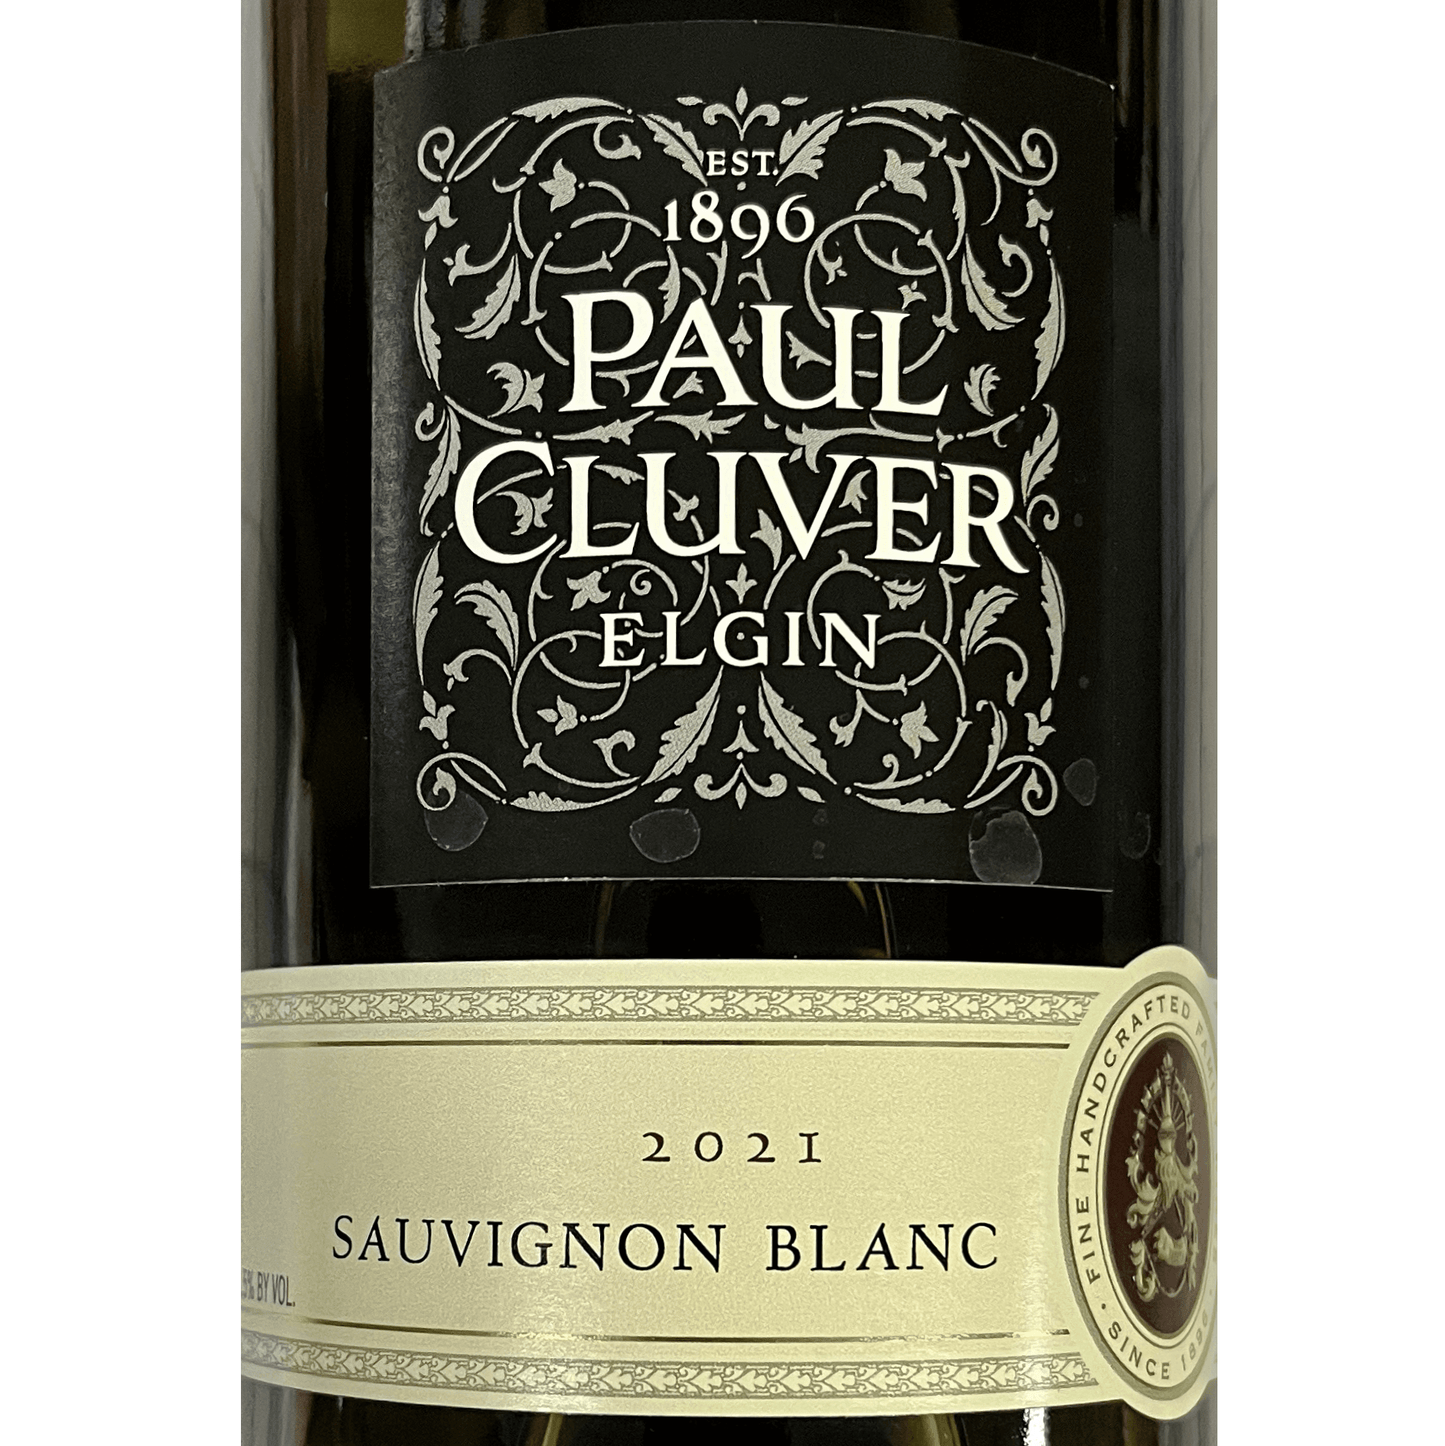 #039 - 2021 Paul Cluver Sauvignon Blanc